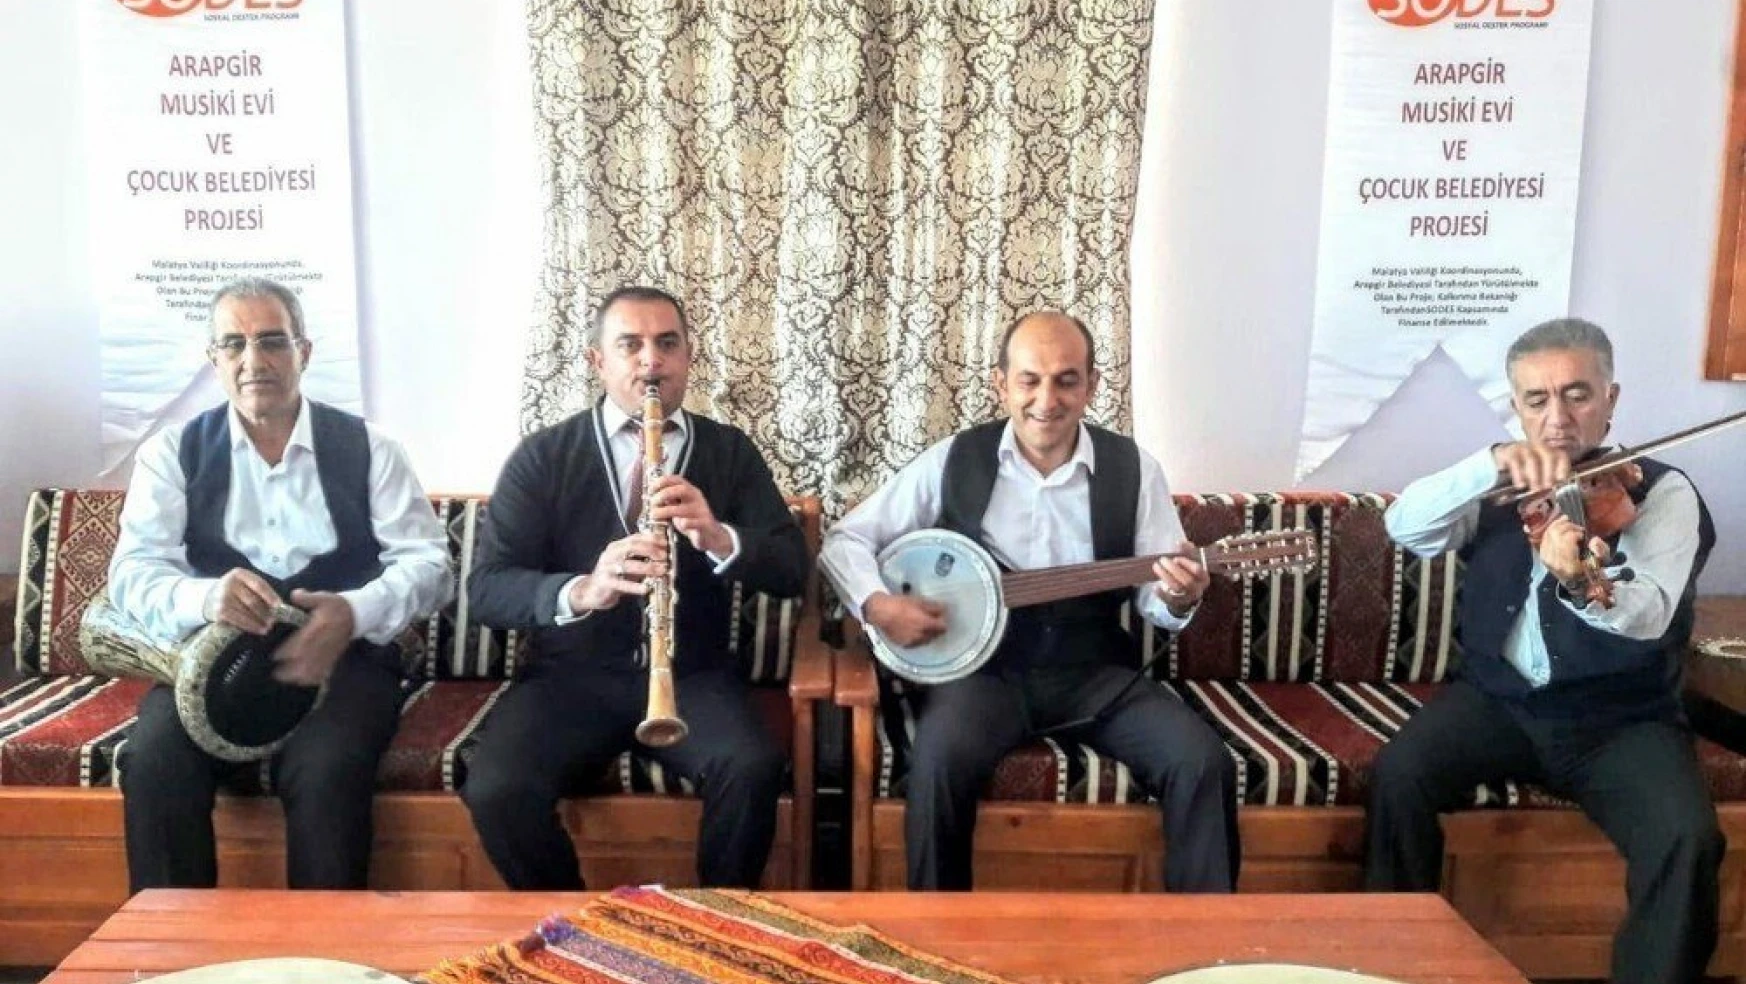 Musiki nağmeleri Arapgir'de hayat buluyor